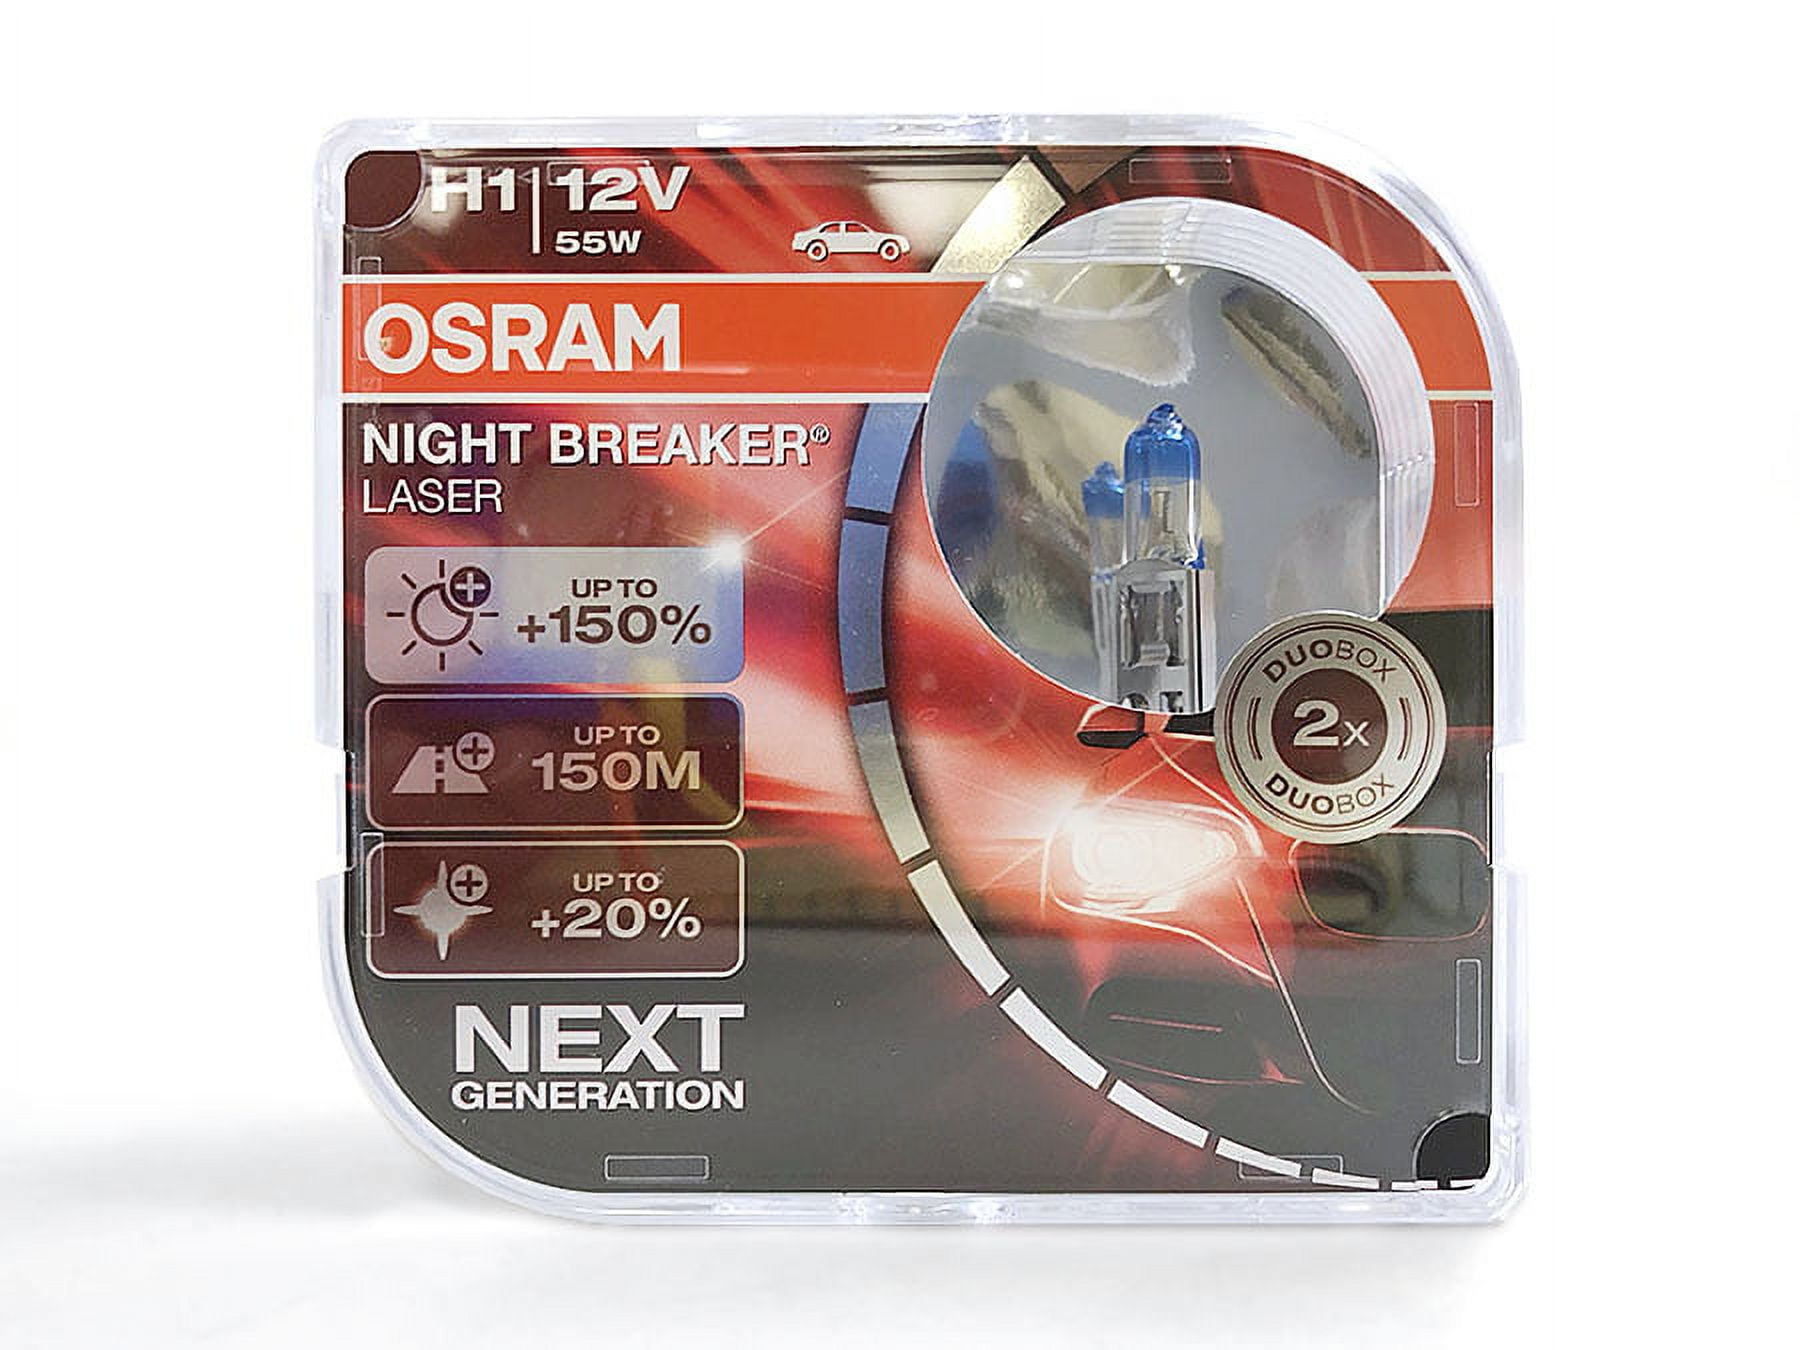 OSRAM Night Breaker LASER (Next Generation 2018) +150% H1 Lampen